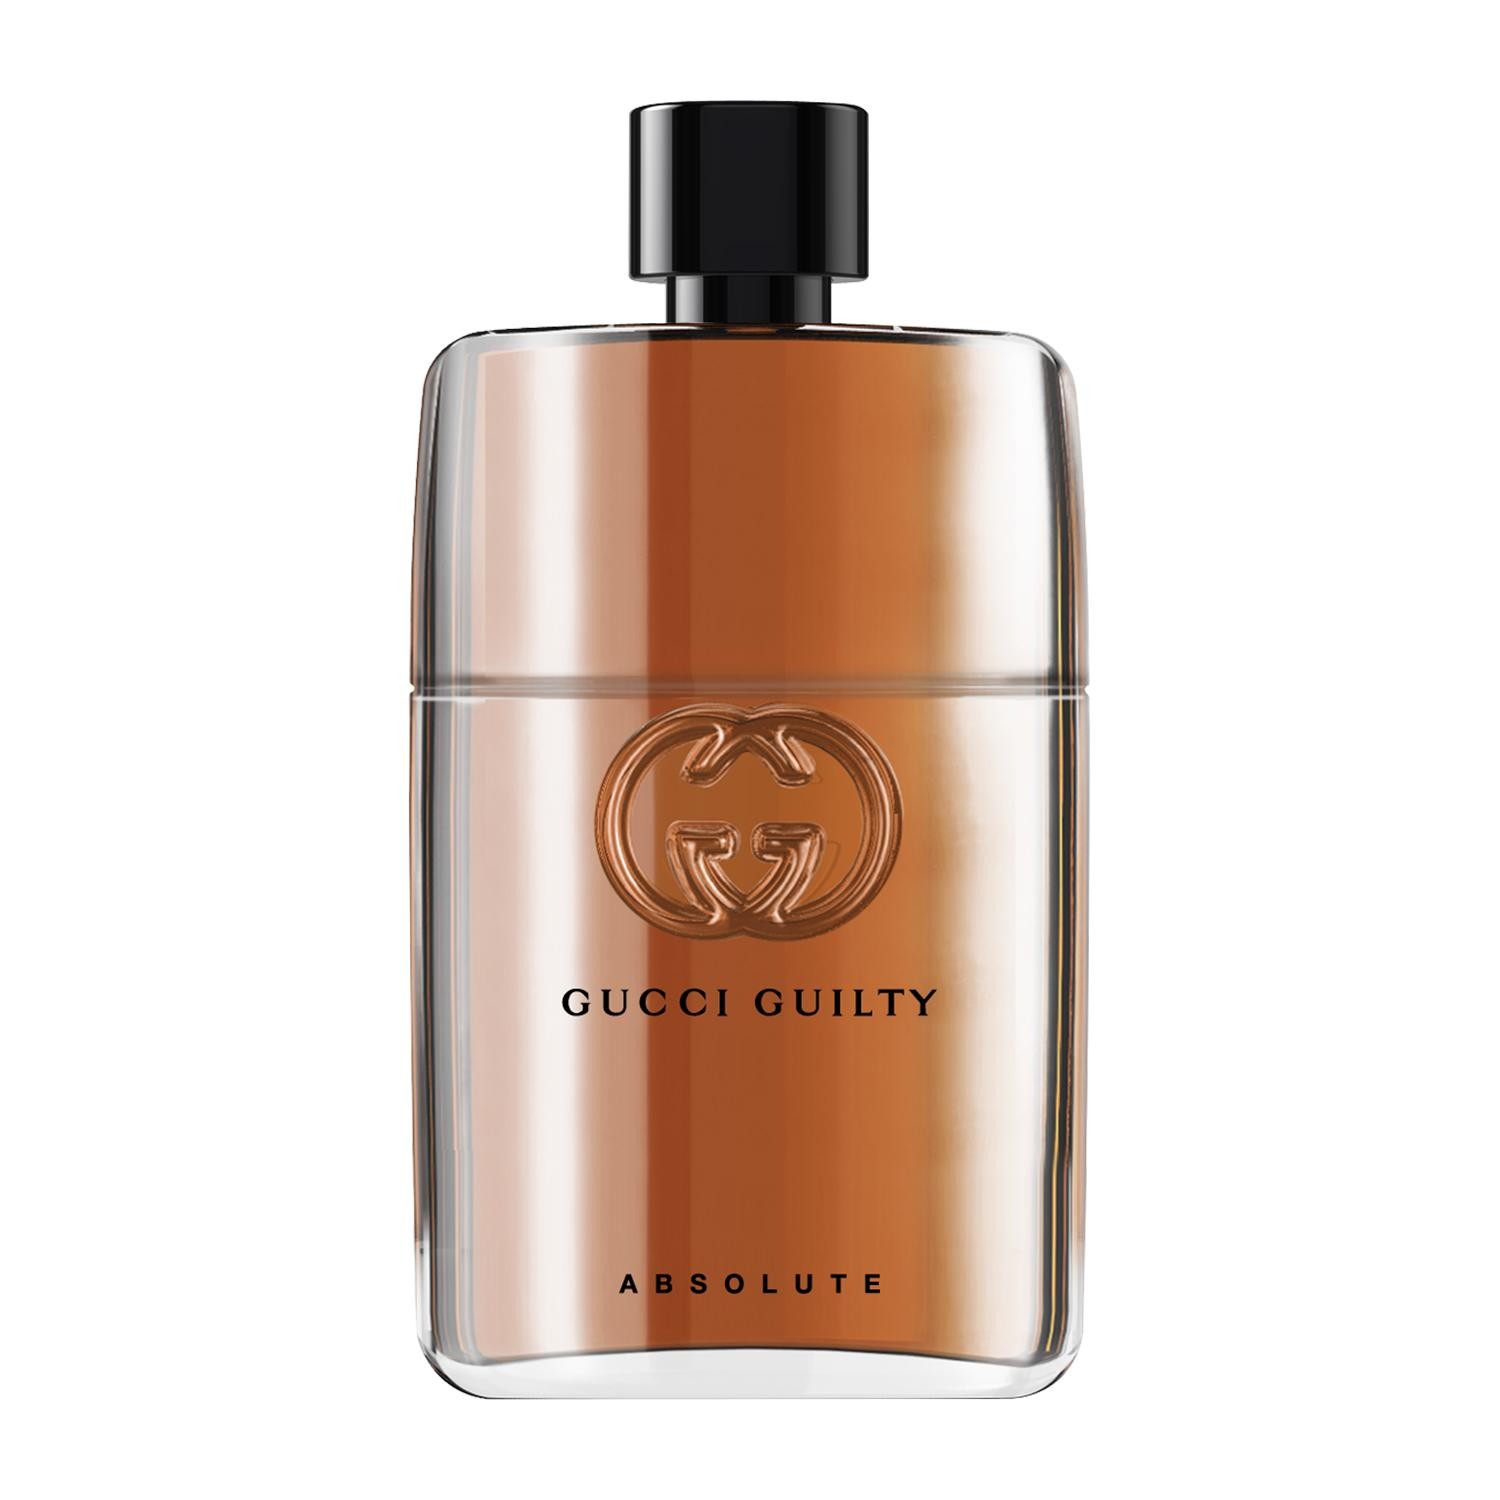 Gucci Guilty Absolute Pour Homme Eau de Parfum 90ml